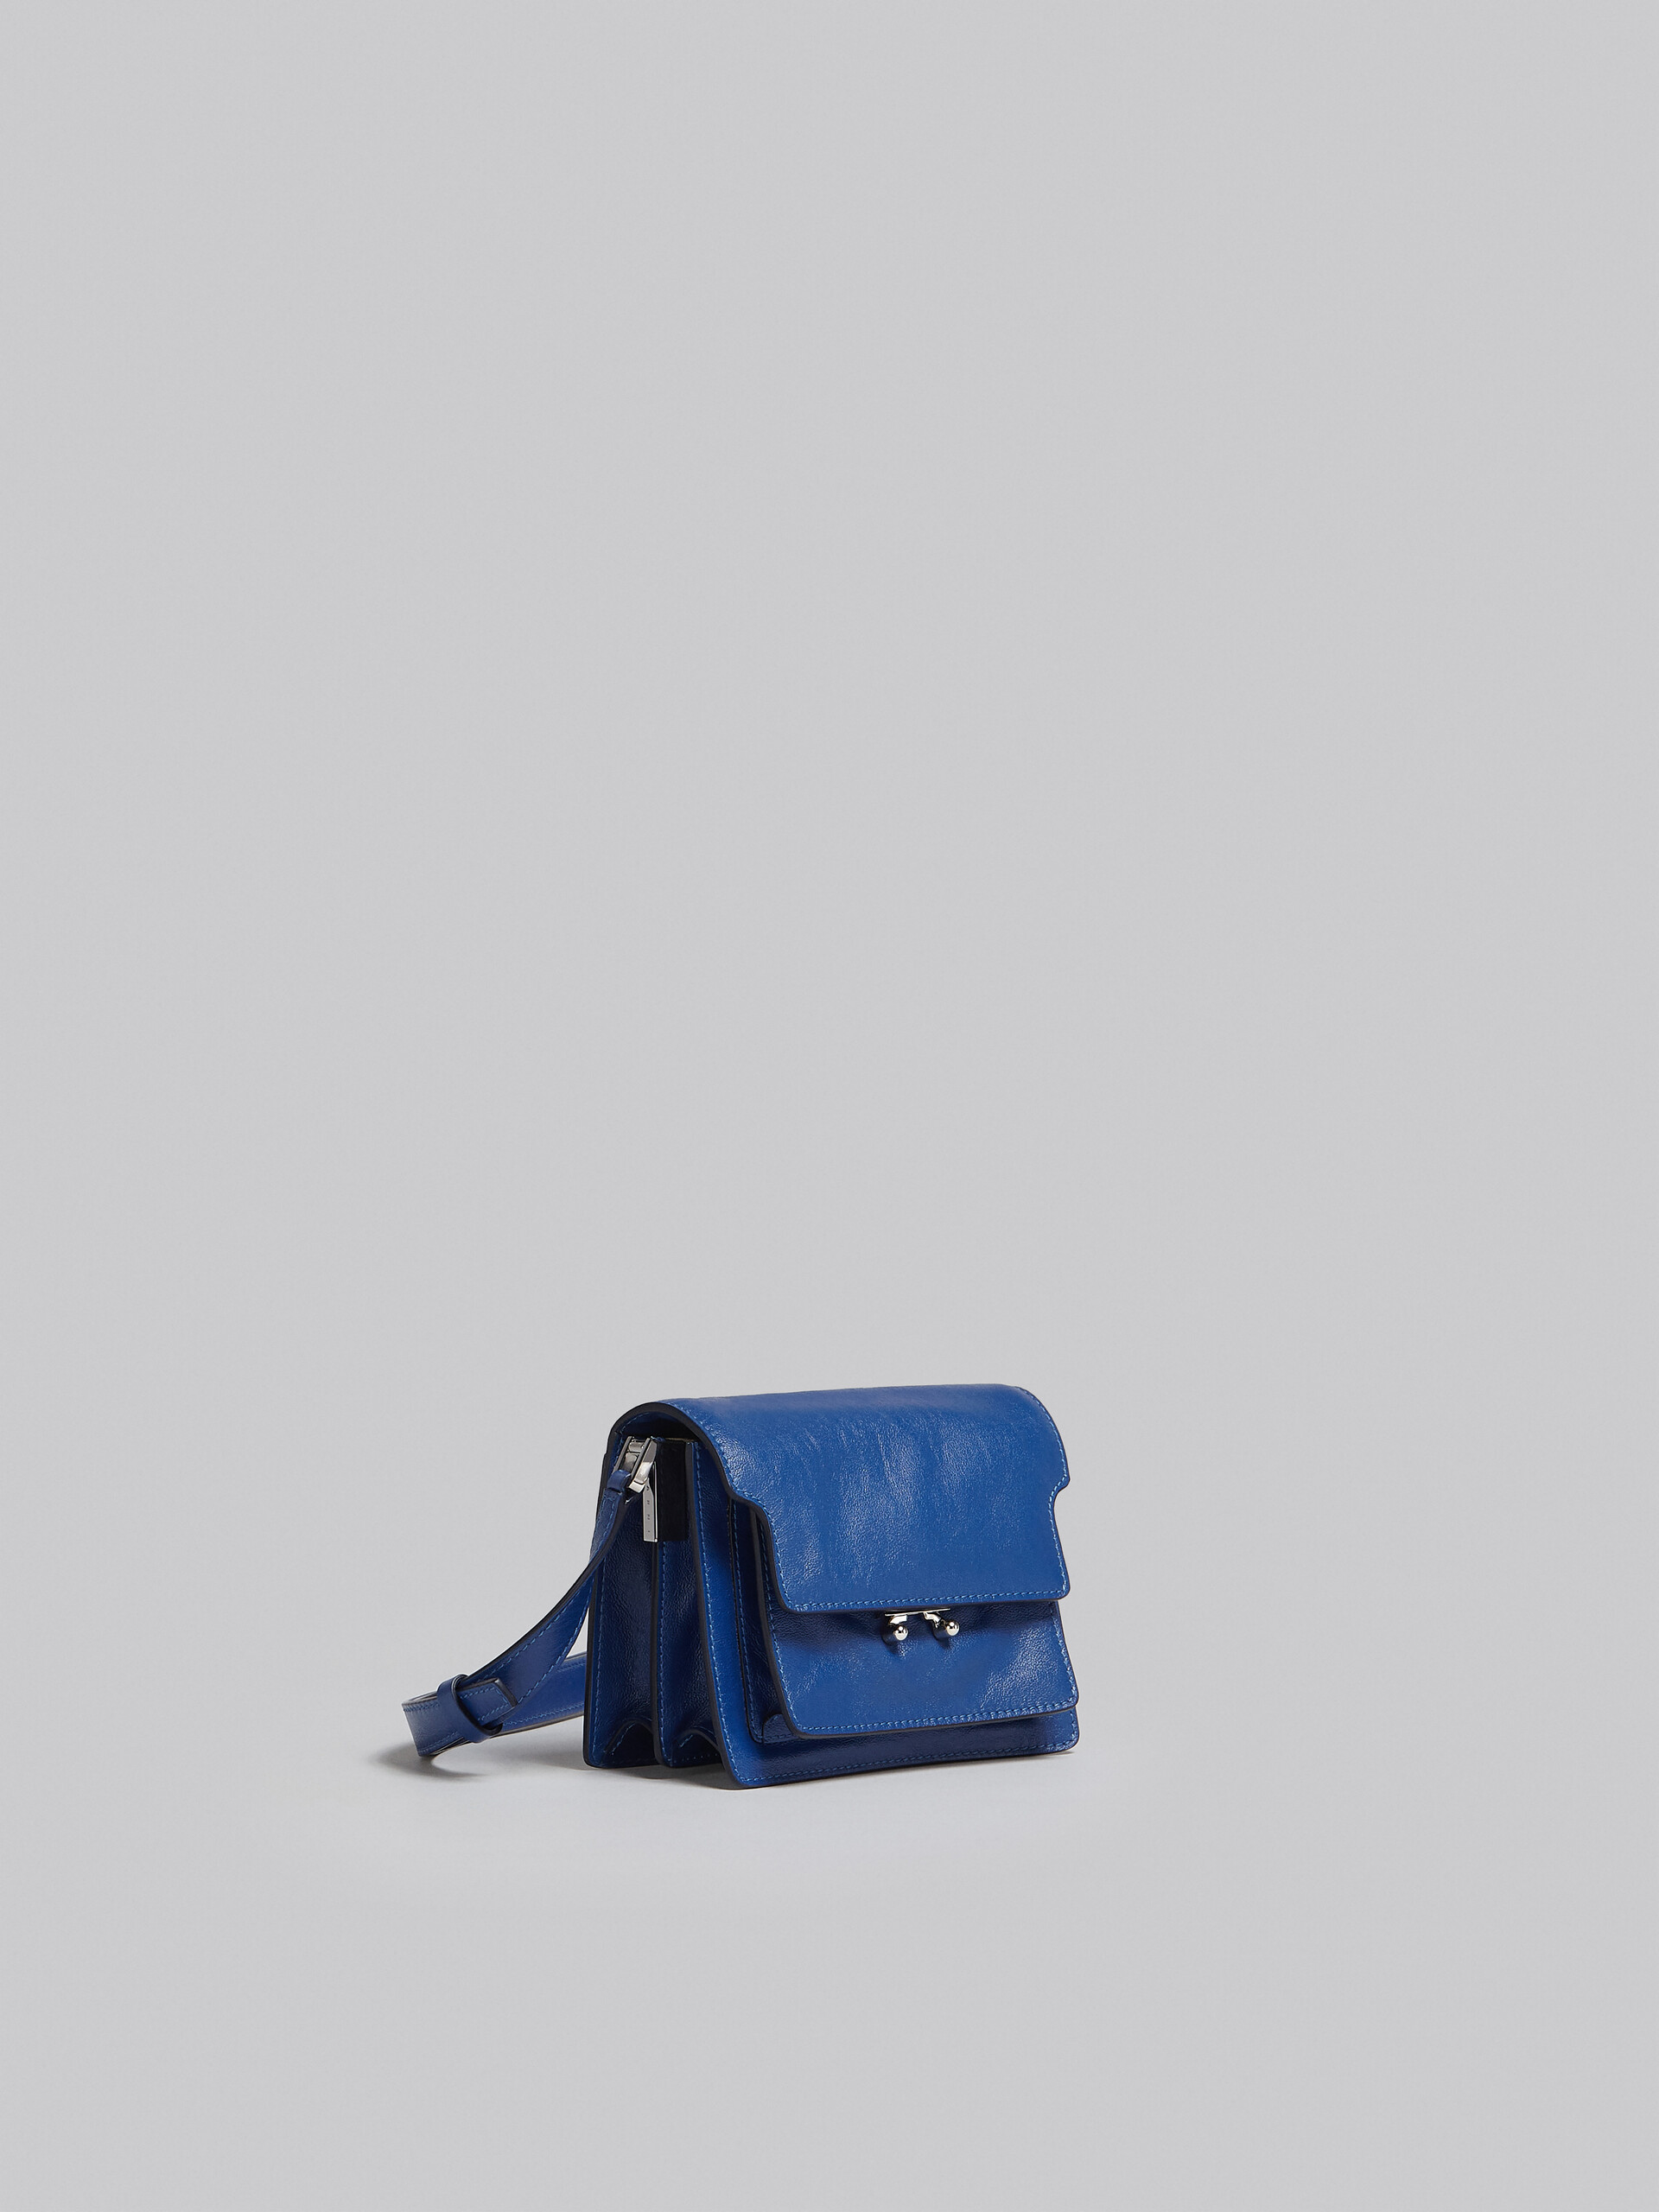 Trunk Soft Mini Bag in blue leather - Shoulder Bag - Image 6